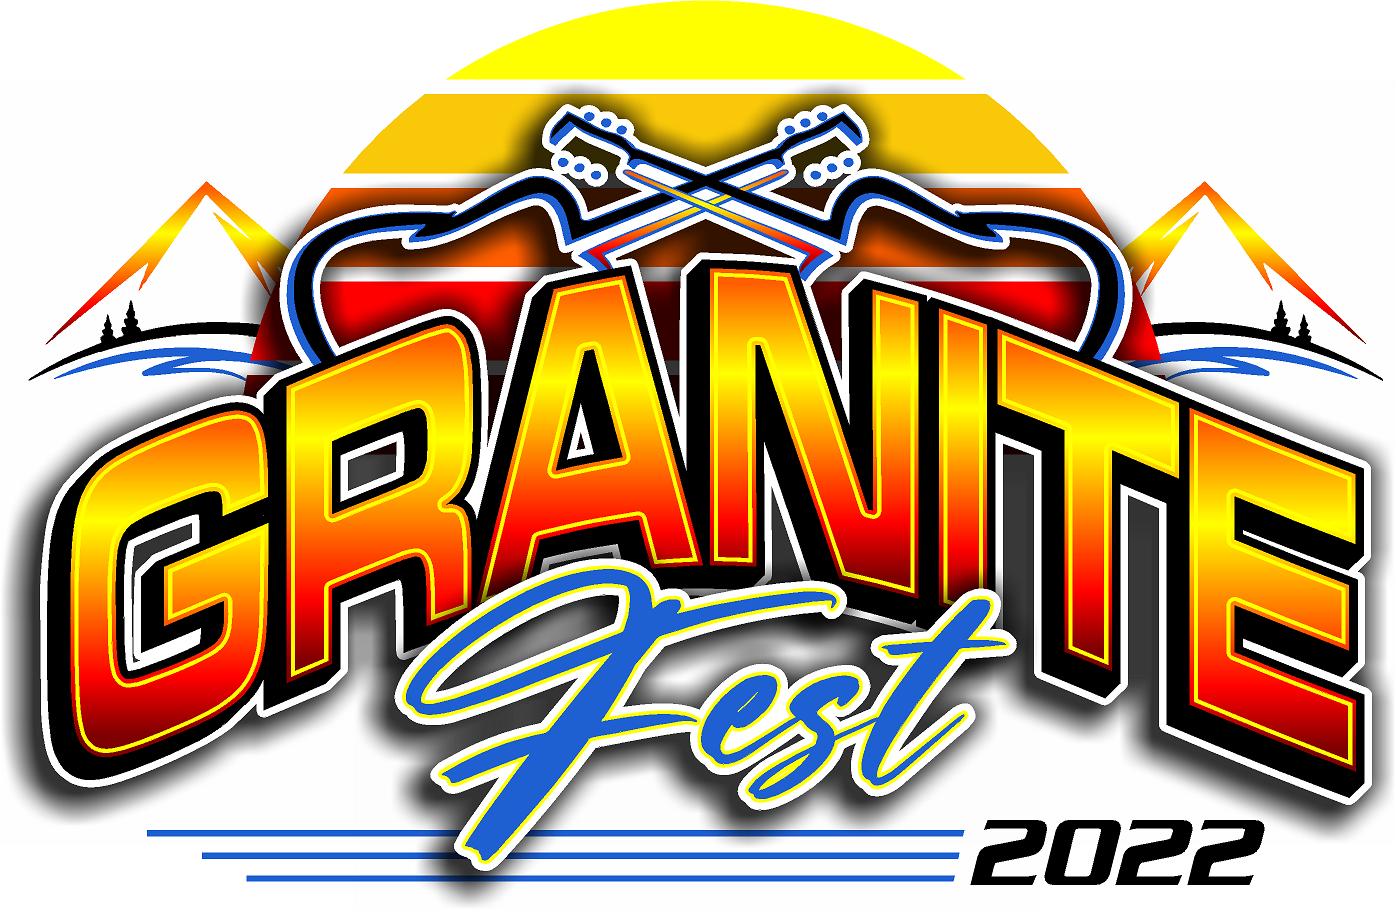 Granite Fest